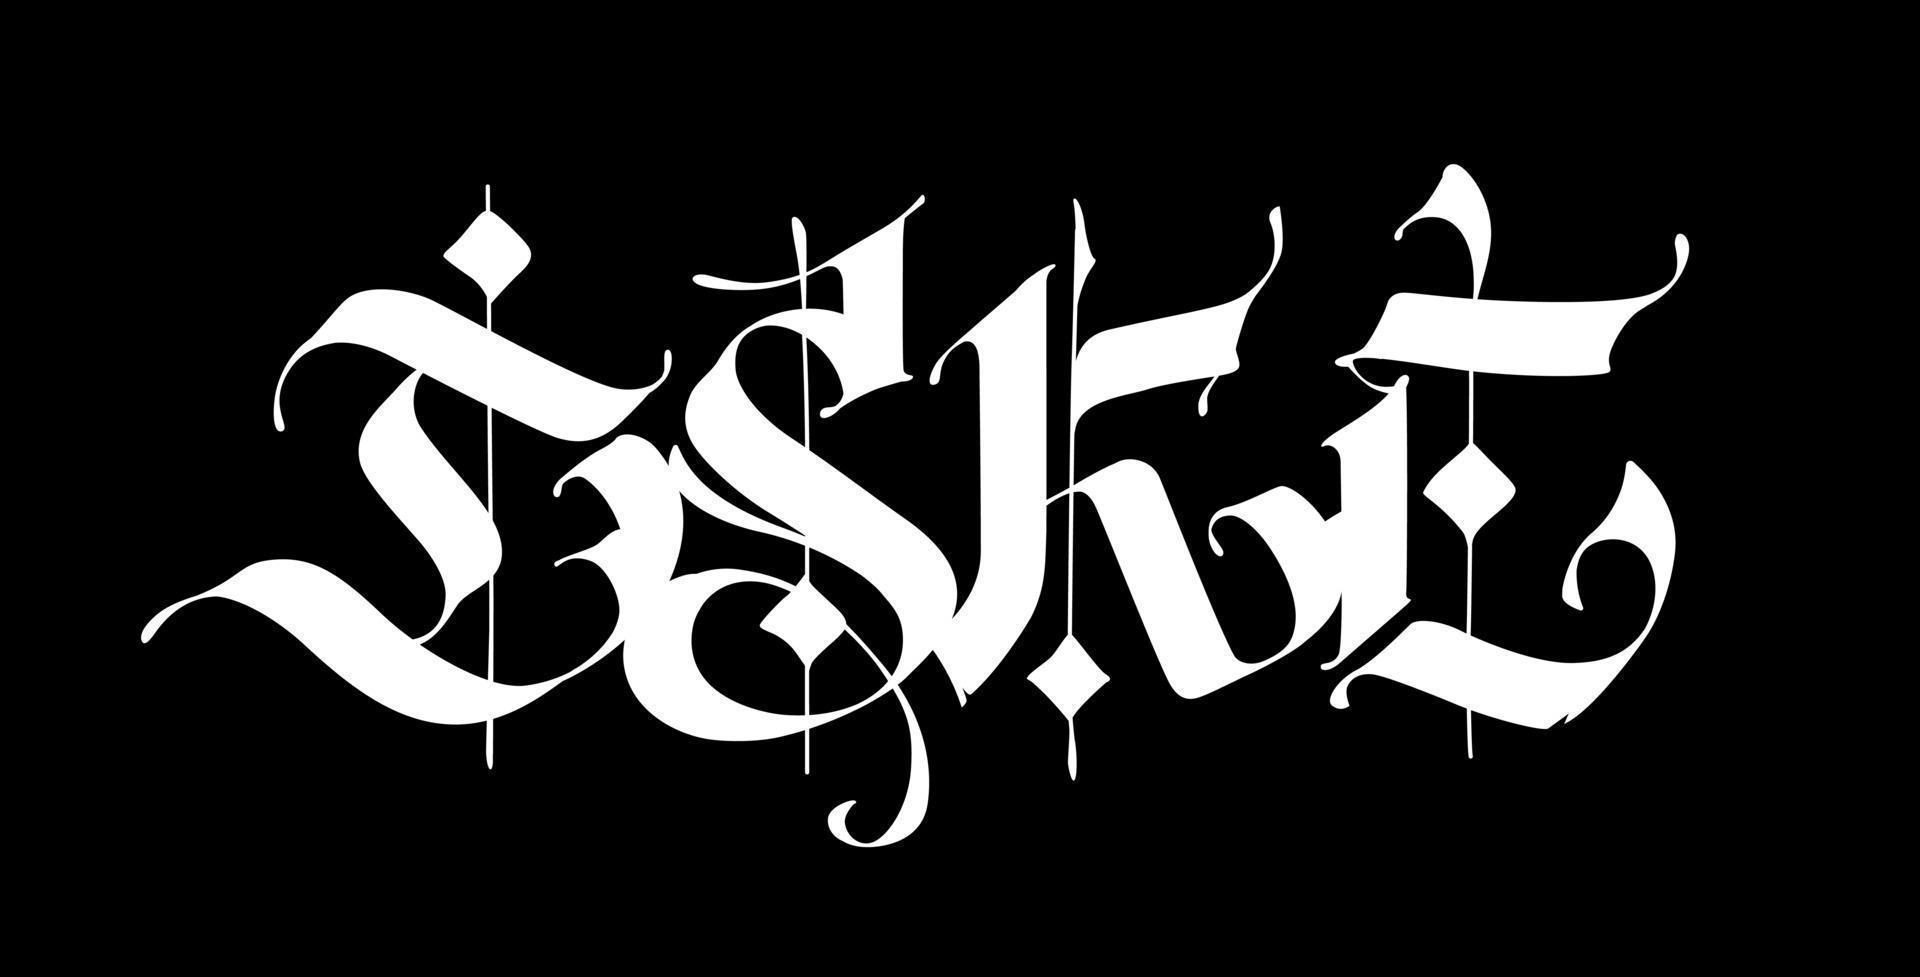 d, s, k, e, in stile gotico. vettore. lettere e simboli su sfondo nero. calligrafia con pennarello bianco vettore